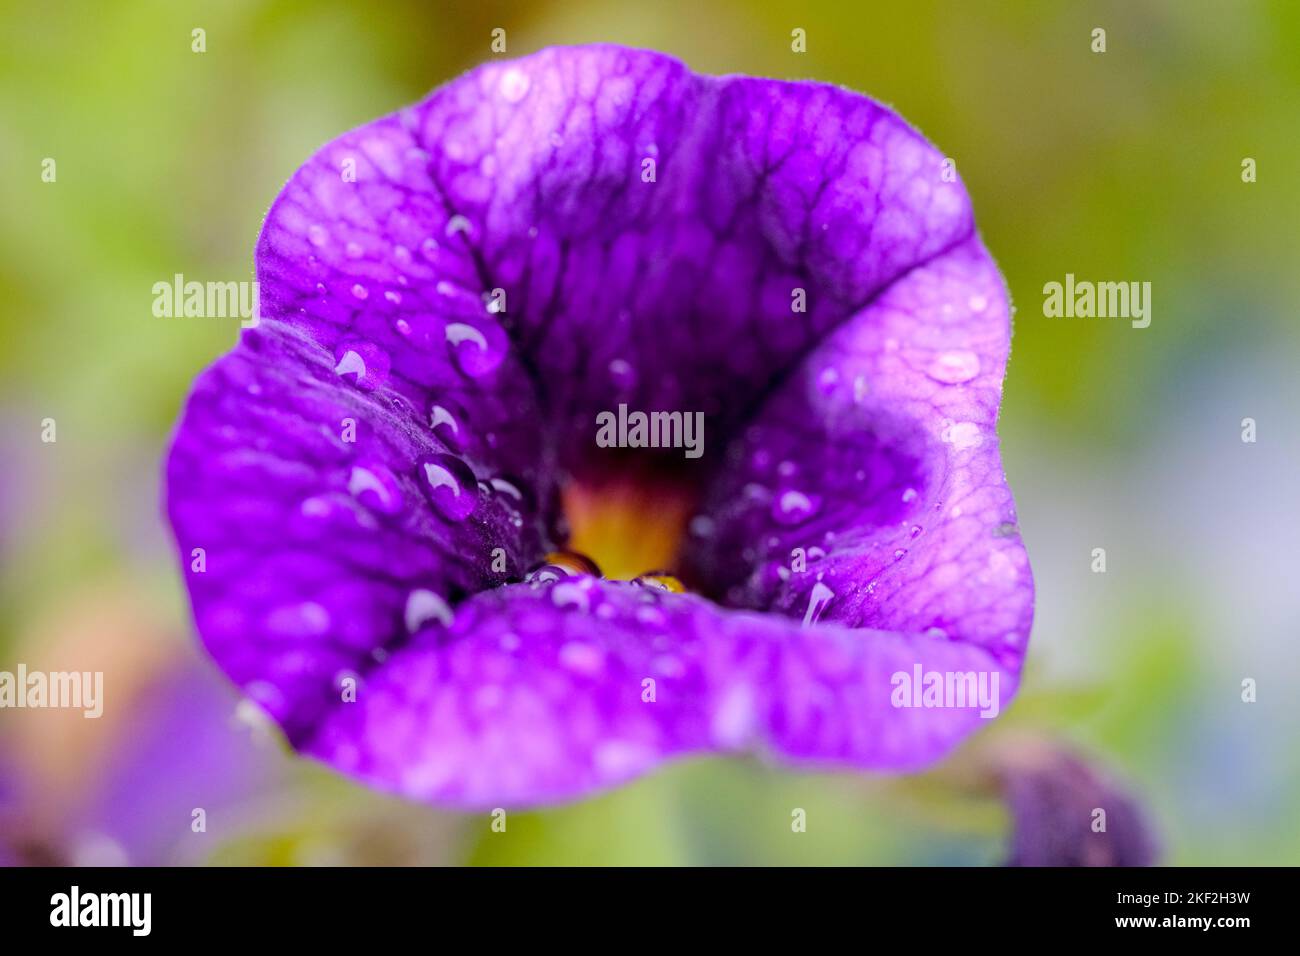 Fiore blu/viola con gocce di pioggia poggiate sui petali. Giardino in estate. Immagine macro. Foto Stock